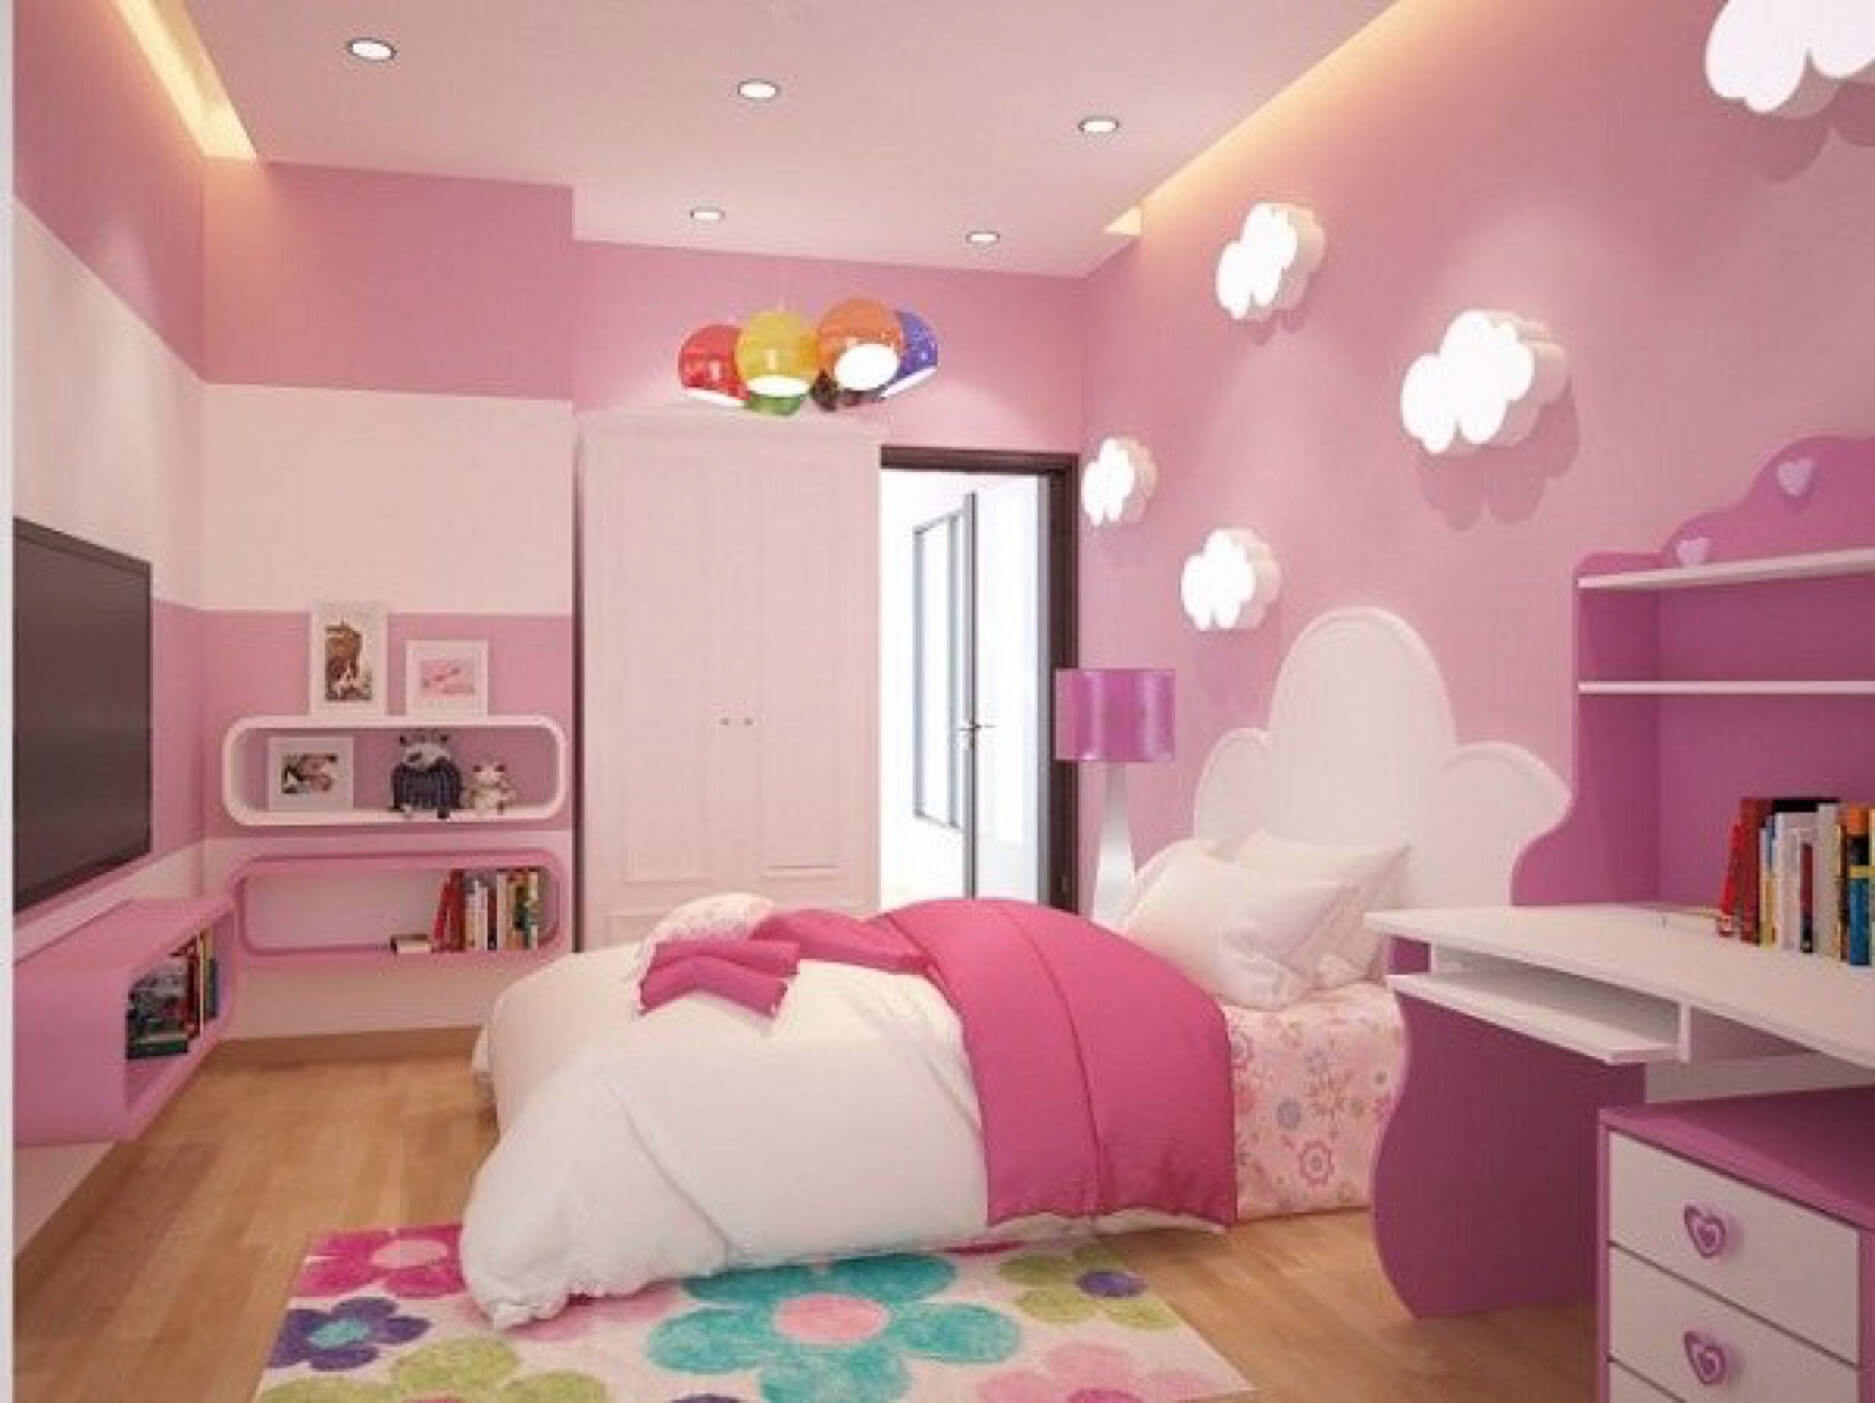 Kinh nghiệm chọn màu sơn phòng ngủ đẹp cho con gái